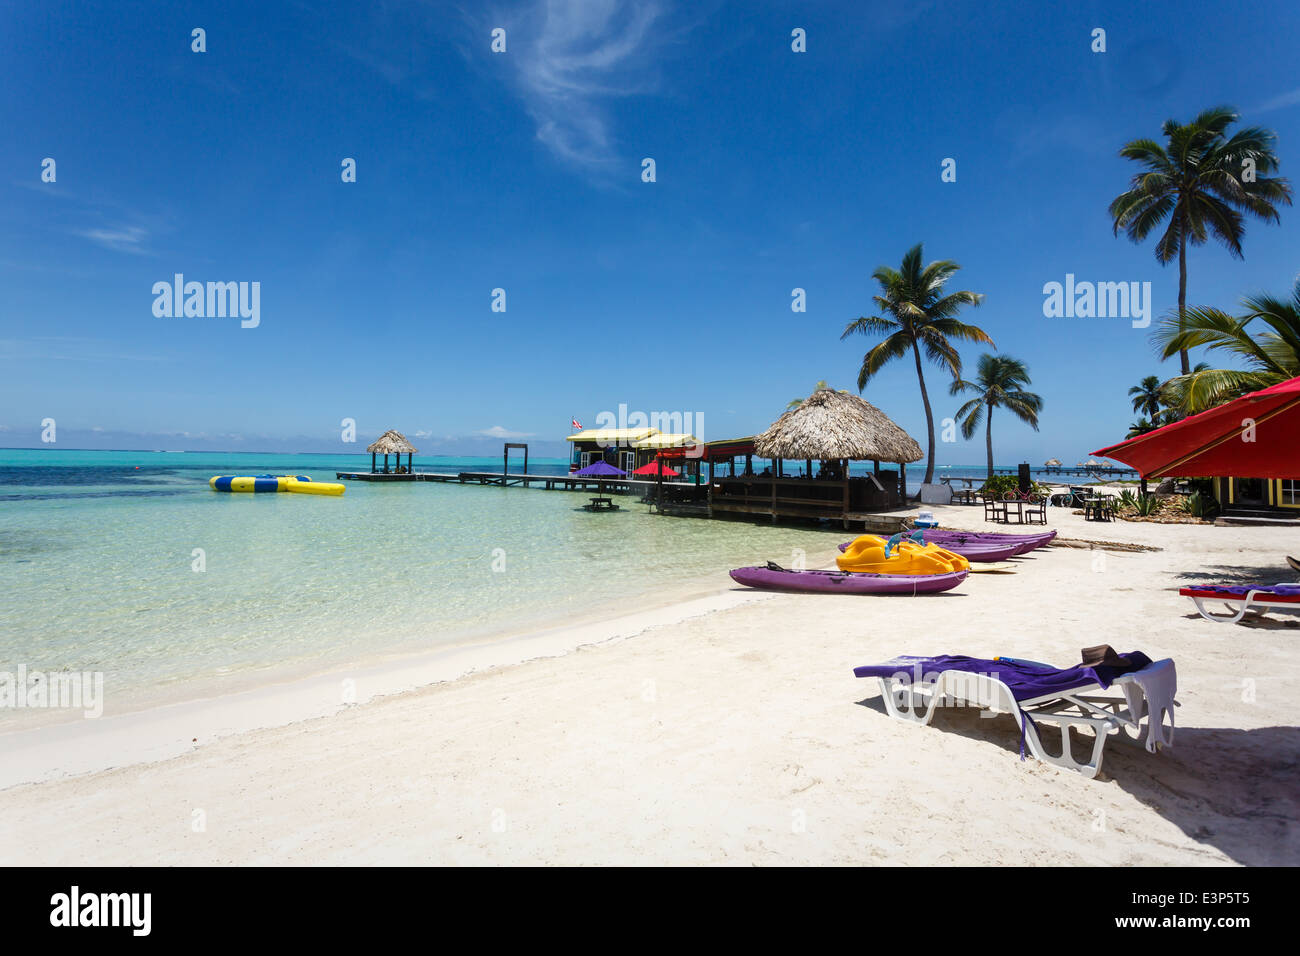 Paysage relaxant d'une station balnéaire avec du sable blanc, des cabanes tikki au toit de chaume et des palmiers. Banque D'Images